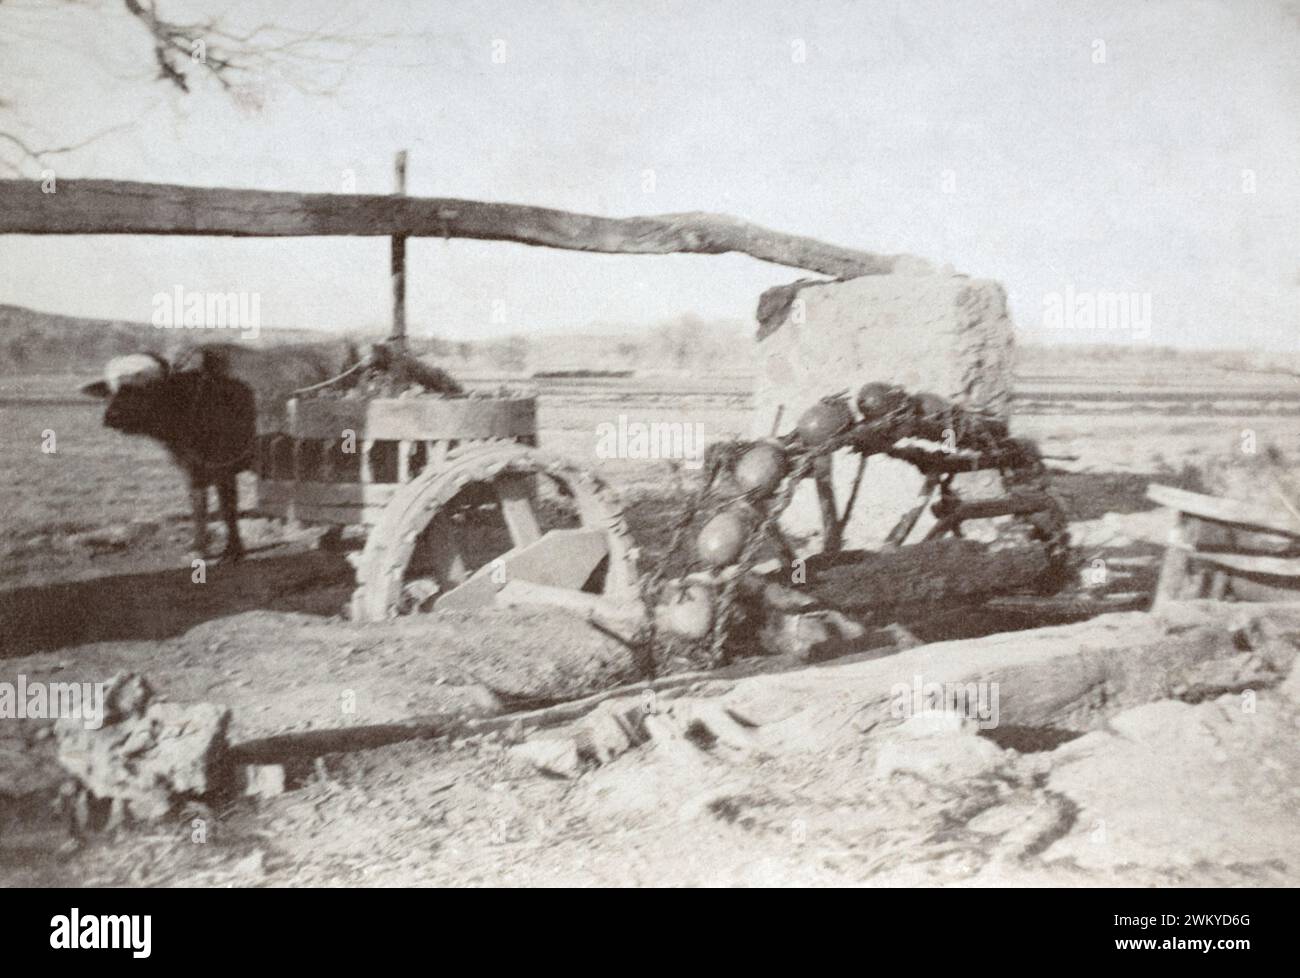 Une roue d'irrigation Saqiyah alimentée par un boeuf indien pendant le Raj britannique, vers 1905. Banque D'Images